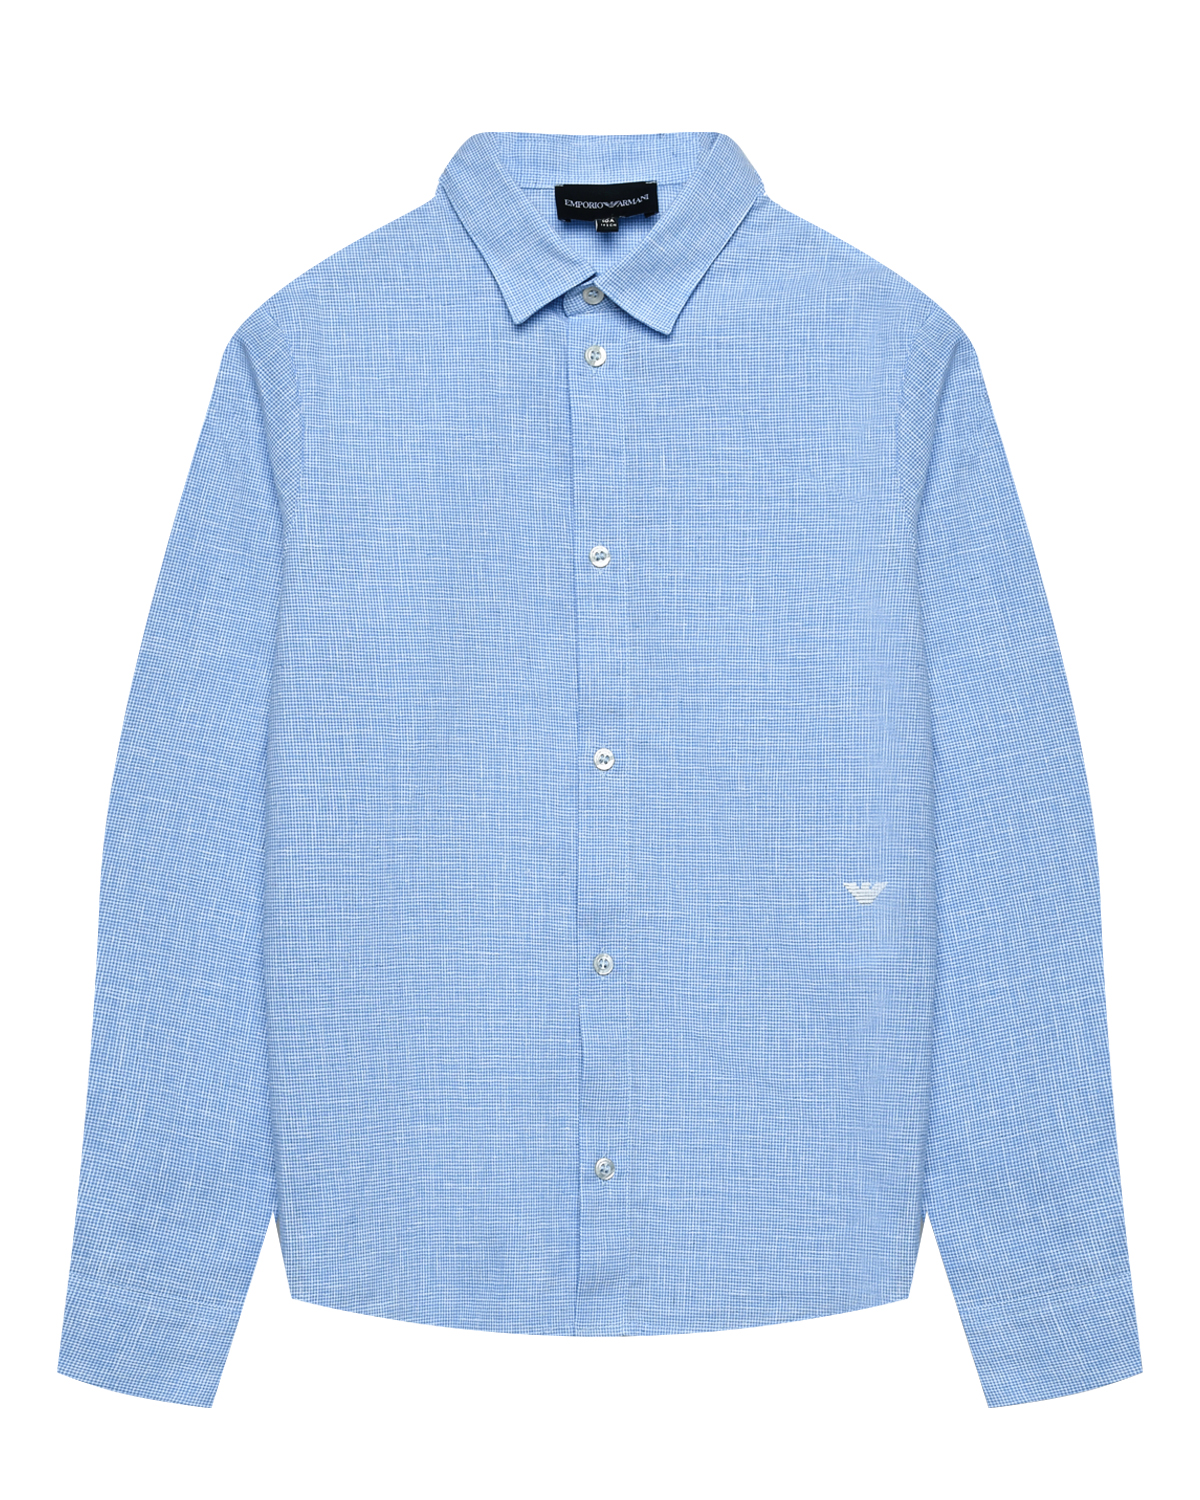 Рубашка с длинными рукавами, голубая Emporio Armani, размер 176, цвет нет цвета